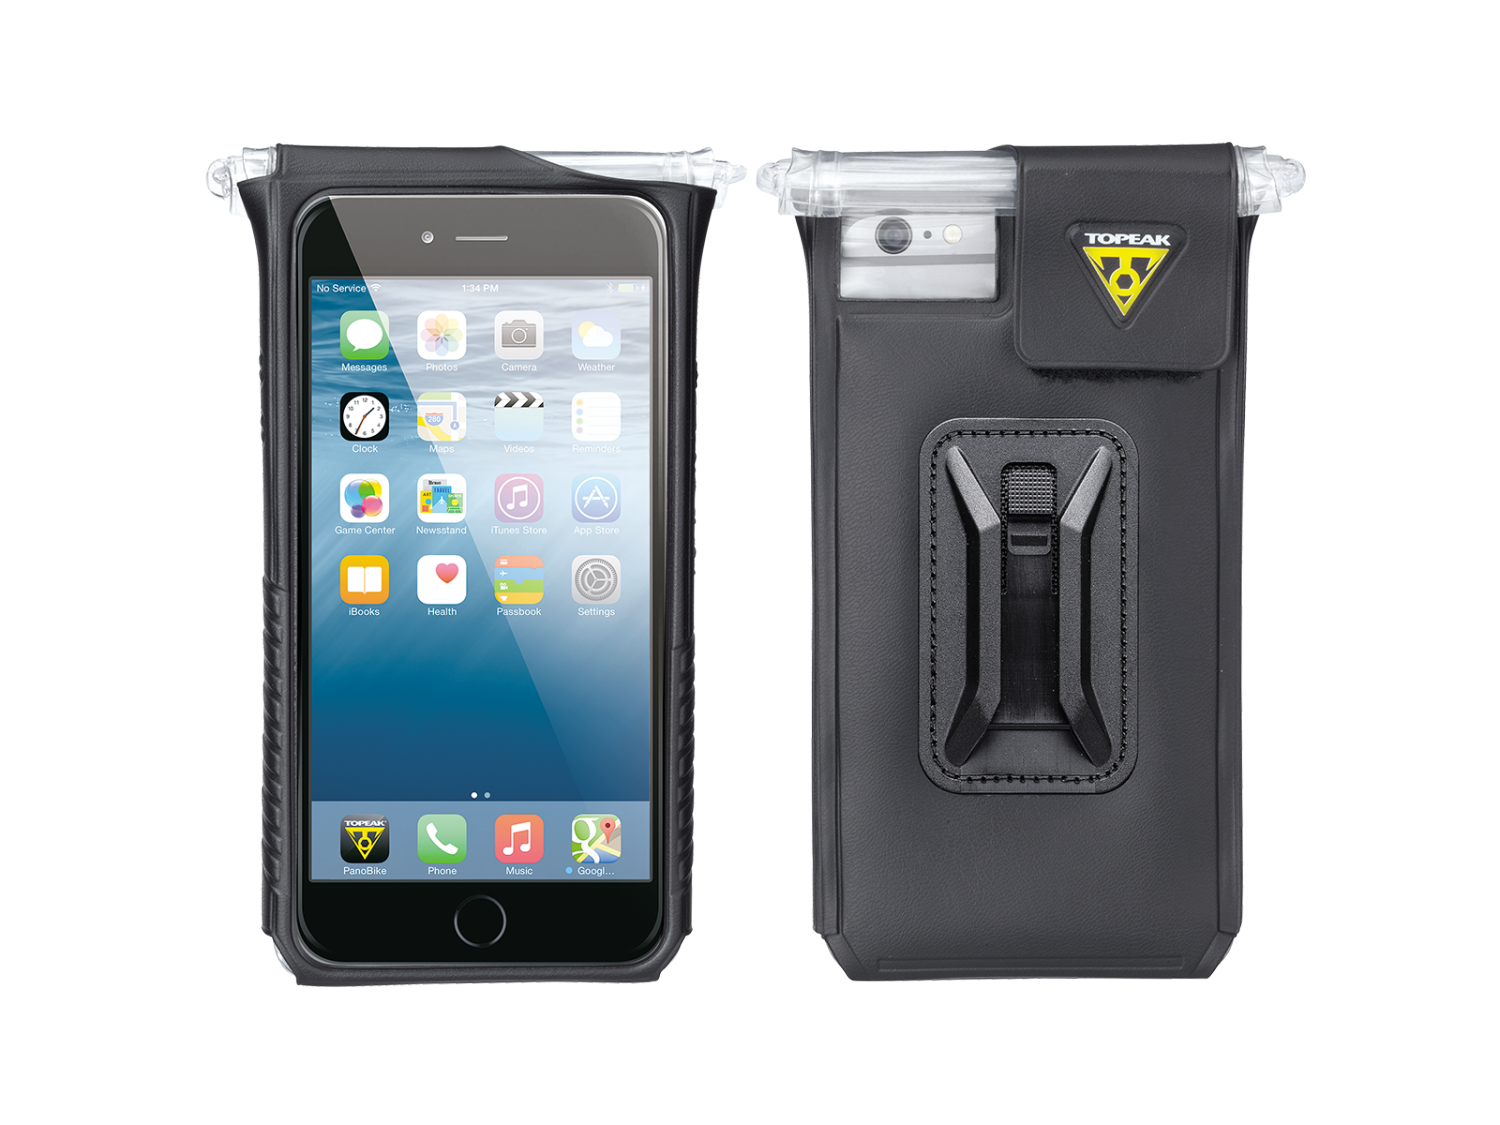 Держатель телефона велосипедный TOPEAK SmartPhone DryBag, для iPhone 6 Plus/6s Plus/7 Plus/8Plus, TT9842B держатель телефона велосипедный topeak smartphone drybag 6 для экранов 5 6 tt9840b